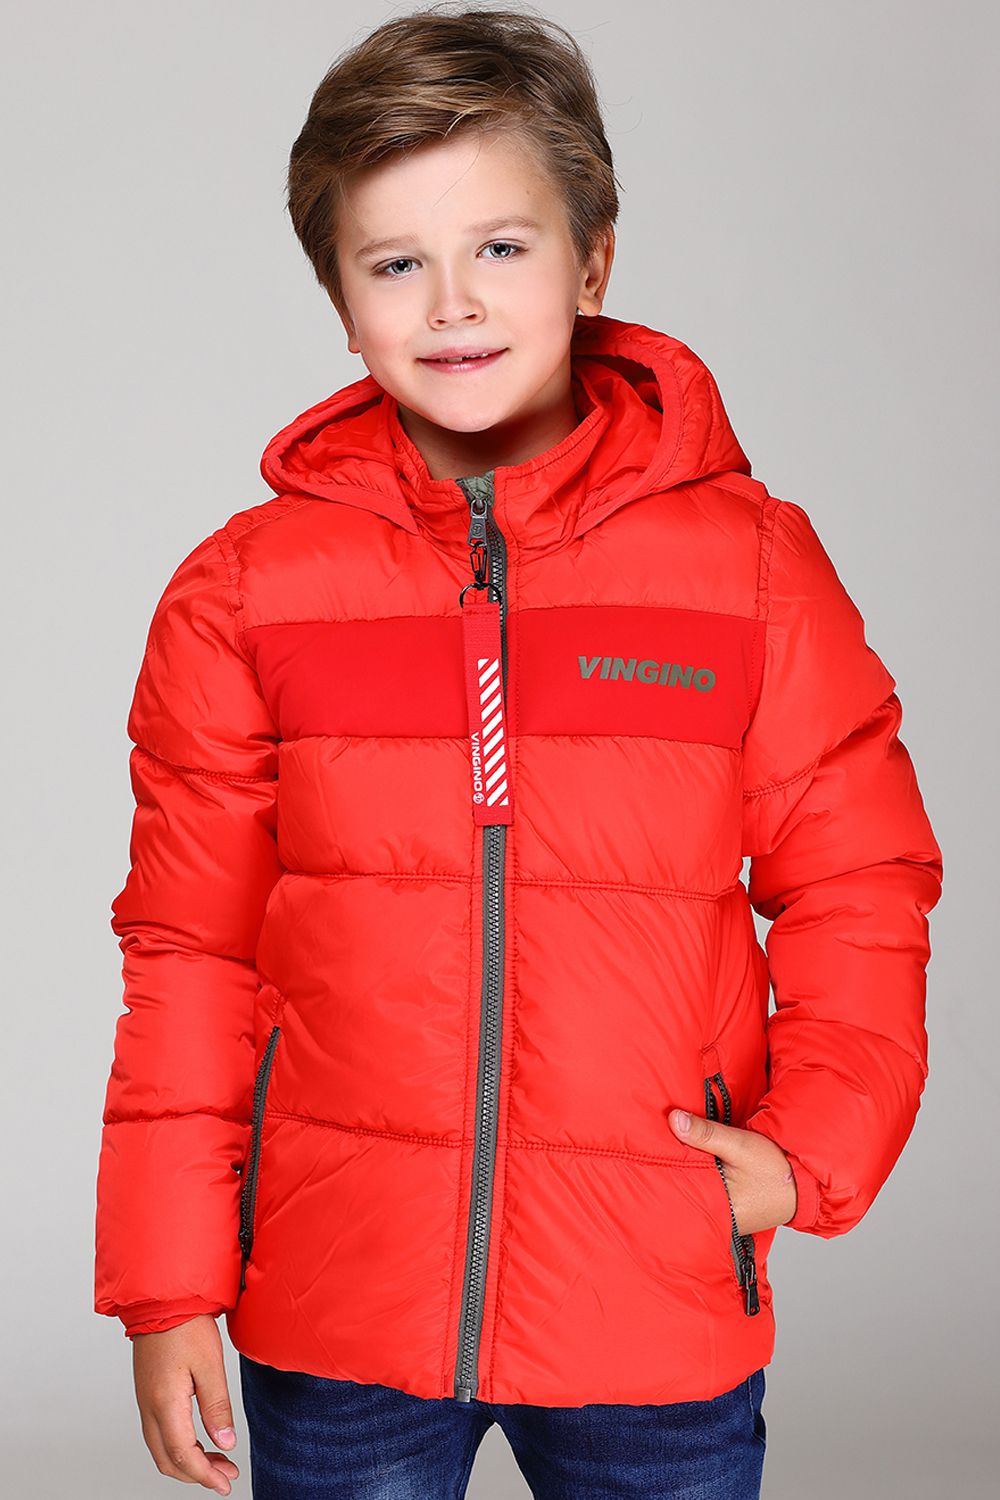 Куртка для мальчика 98. Куртка для мальчика. Красная куртка для мальчика. Модные куртки для мальчиков. Весенняя куртка для мальчика.